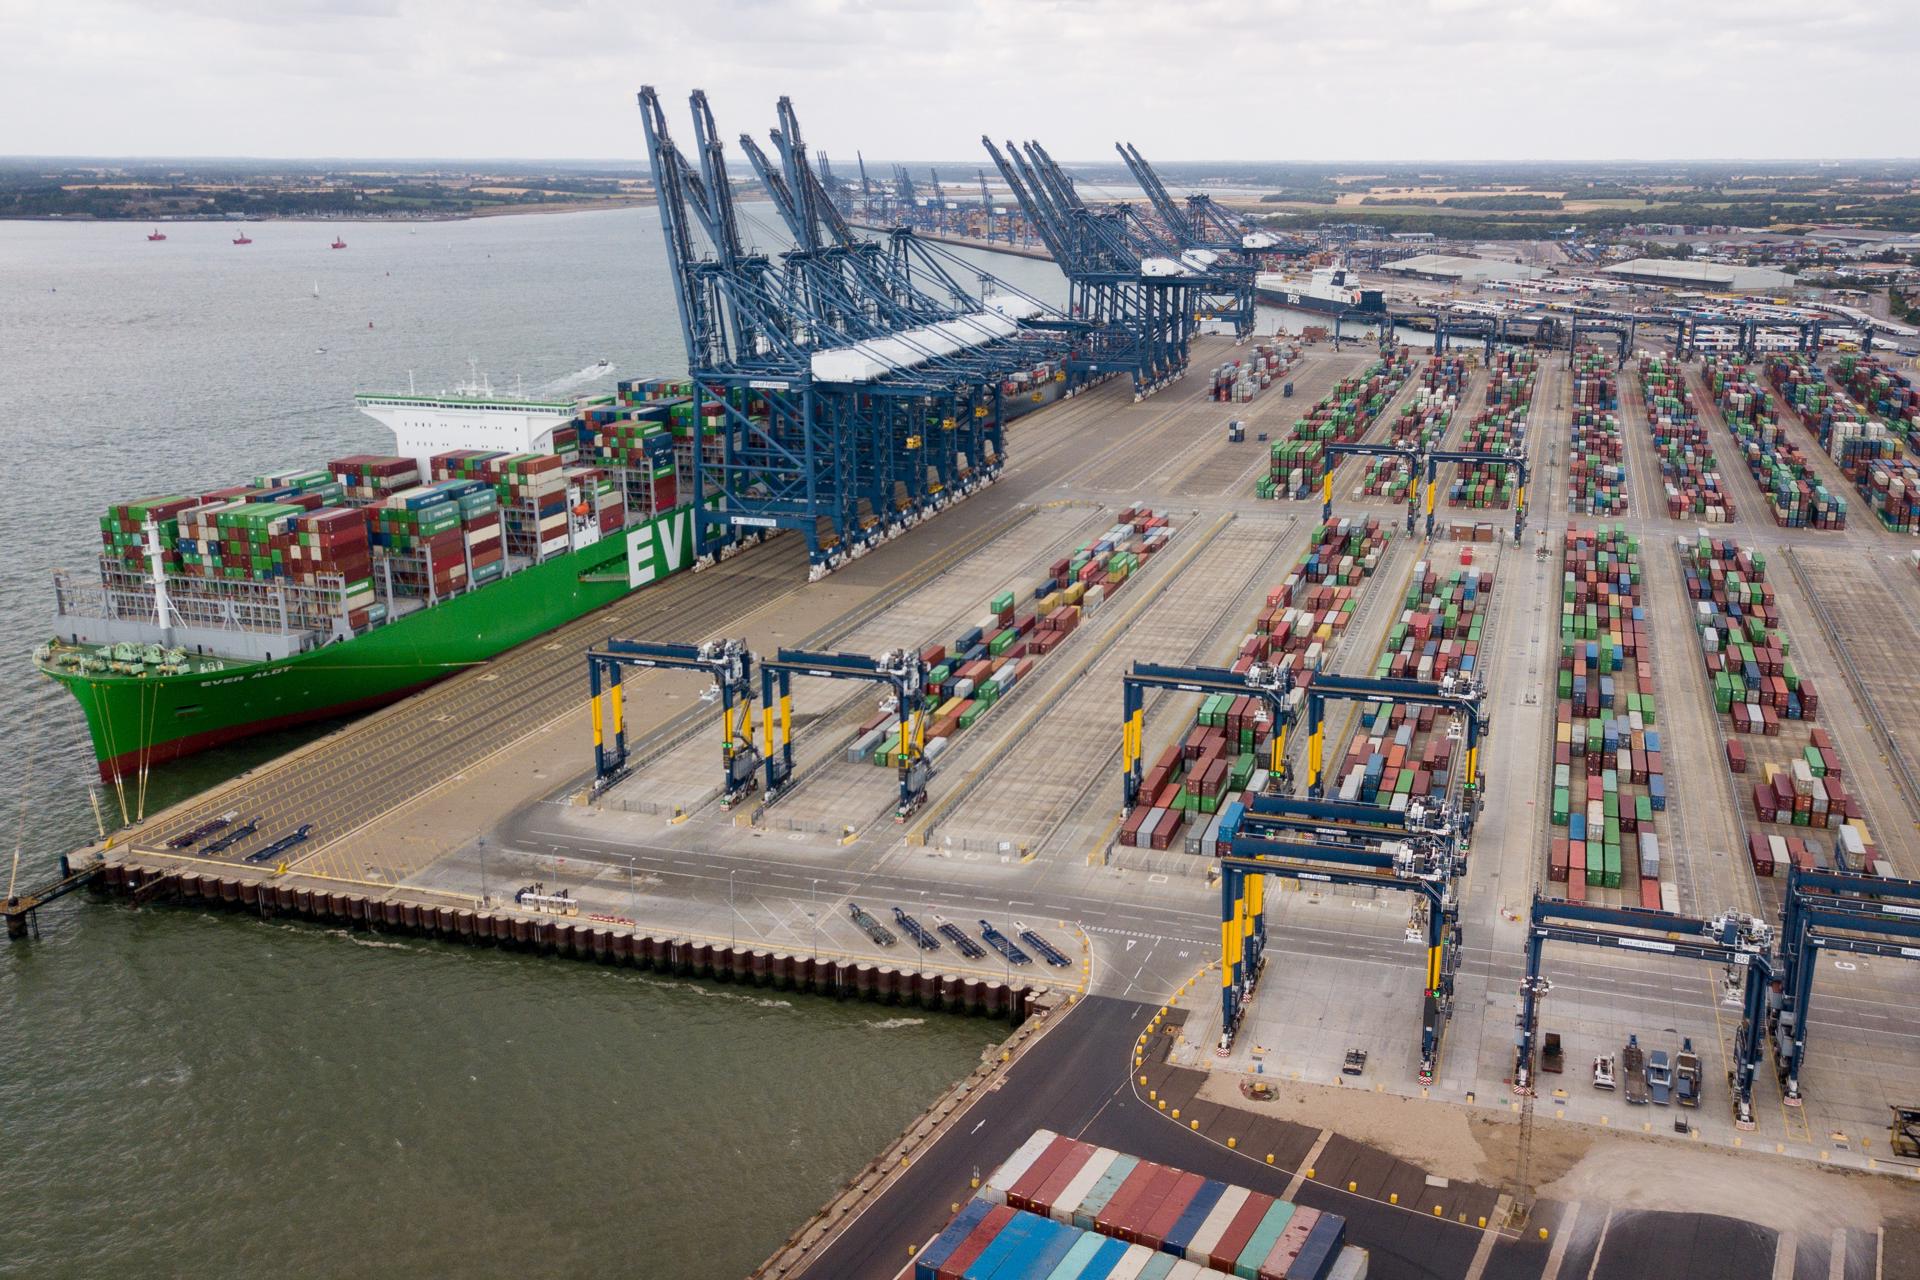 Vista del puerto comercial de Felixstowe, en Reino Unido, en una fotografía de archivo. EFE/Tolga Akmen